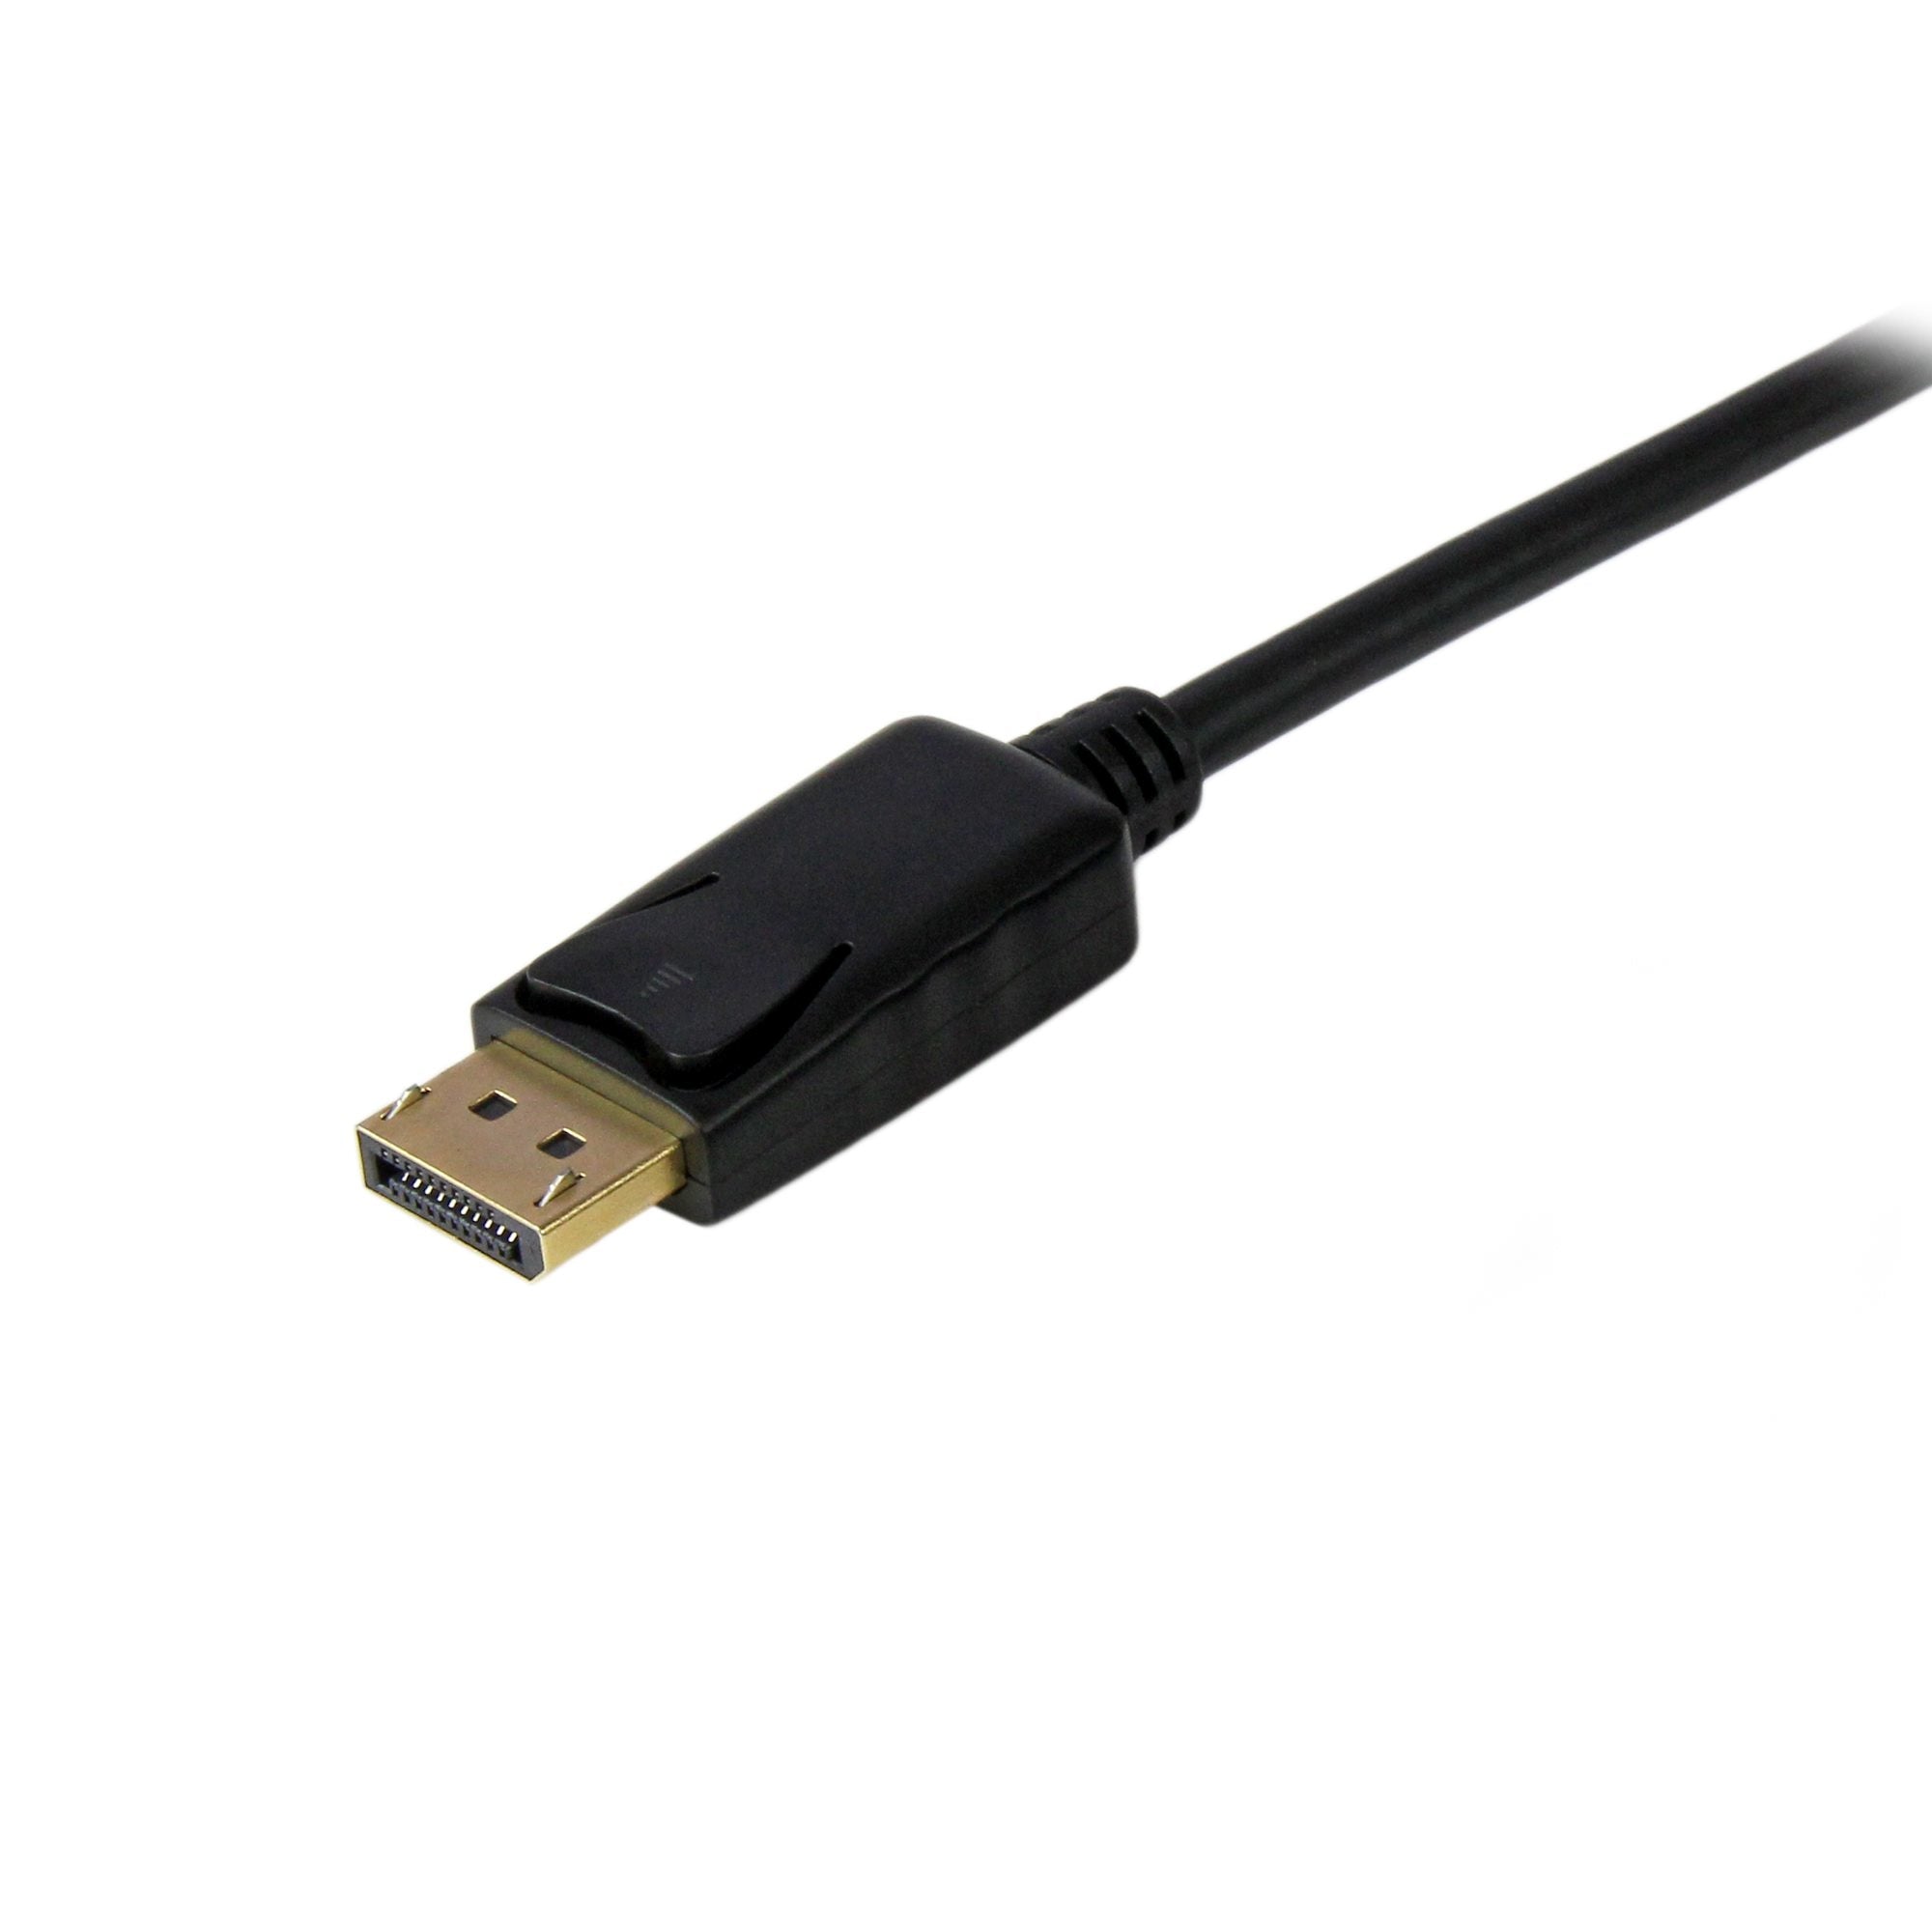 Cable 1.8M De Video Adaptador Convertidor Displayport Dp A Vga - Activo - 1080P - Negro - Startech.Com Mod. Dp2Vgamm6B